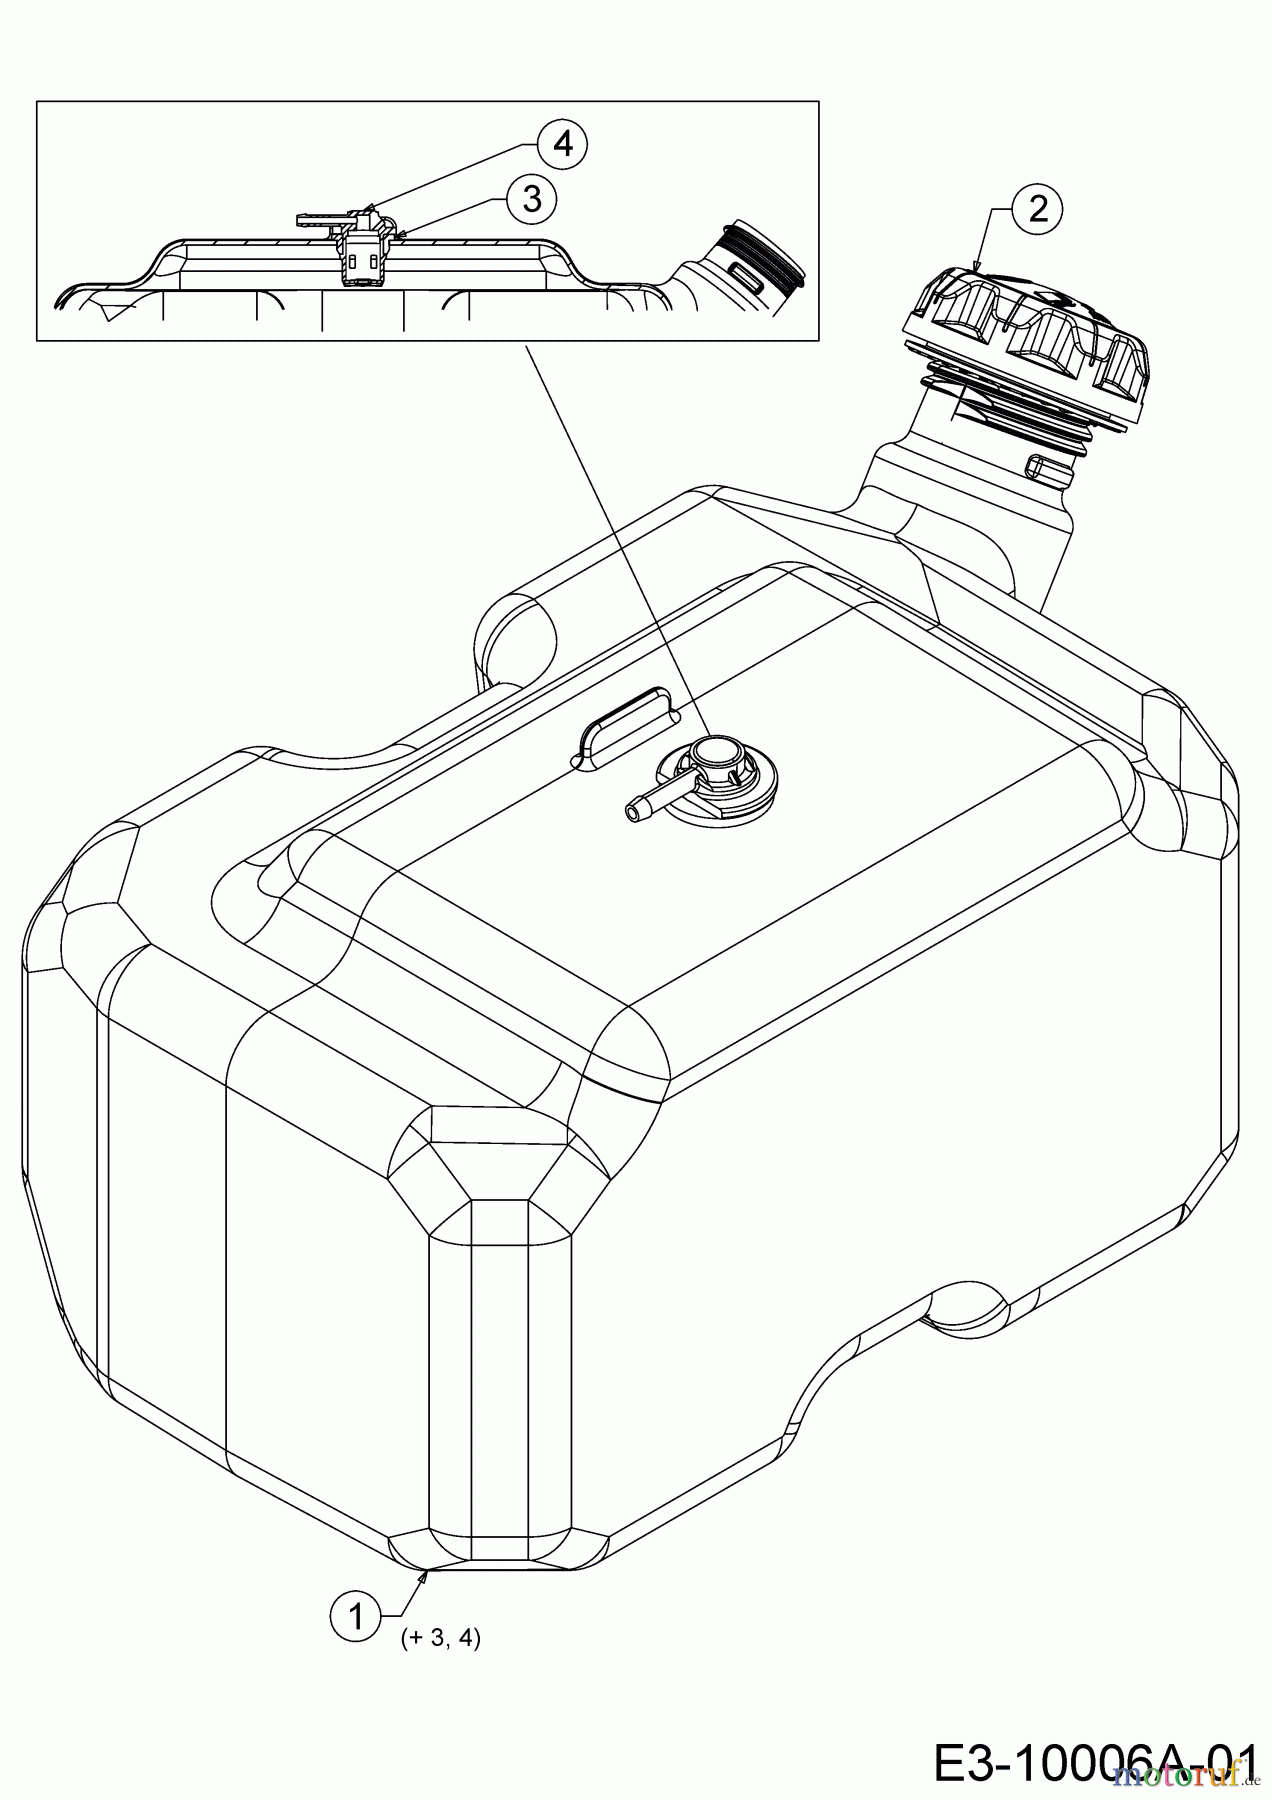  WOLF-Garten Expert Rasentraktoren 106.185 H 13BLA1VR650  (2018) Tank